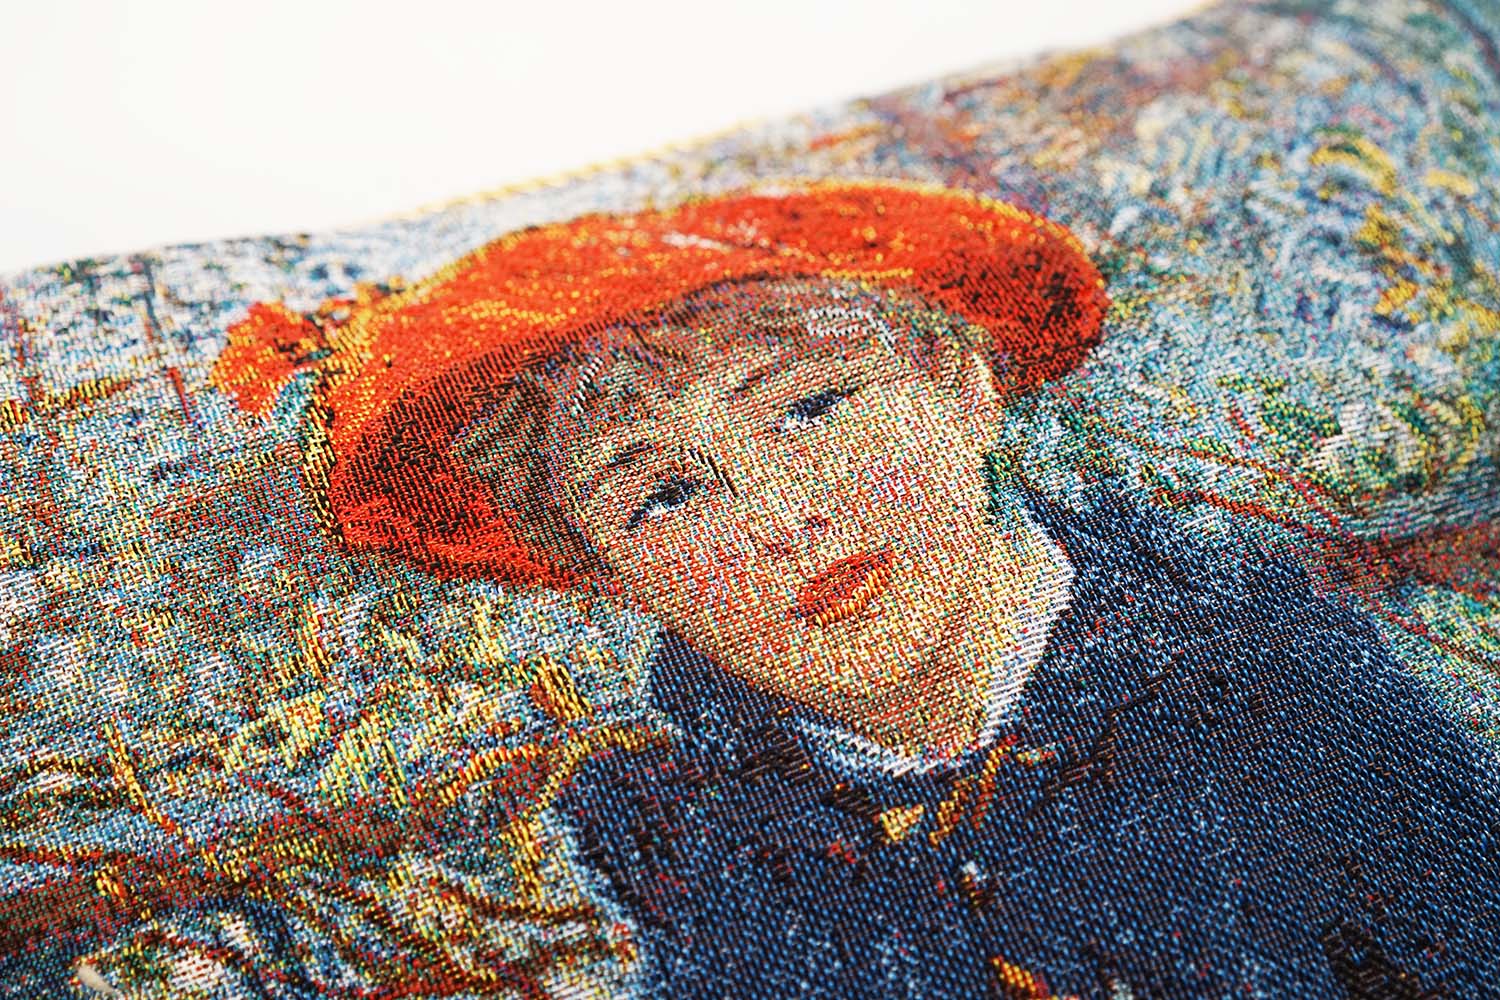 Pierre Auguste Renoir Two Sisters - Cushion Cover Art 45cm*45cm-1